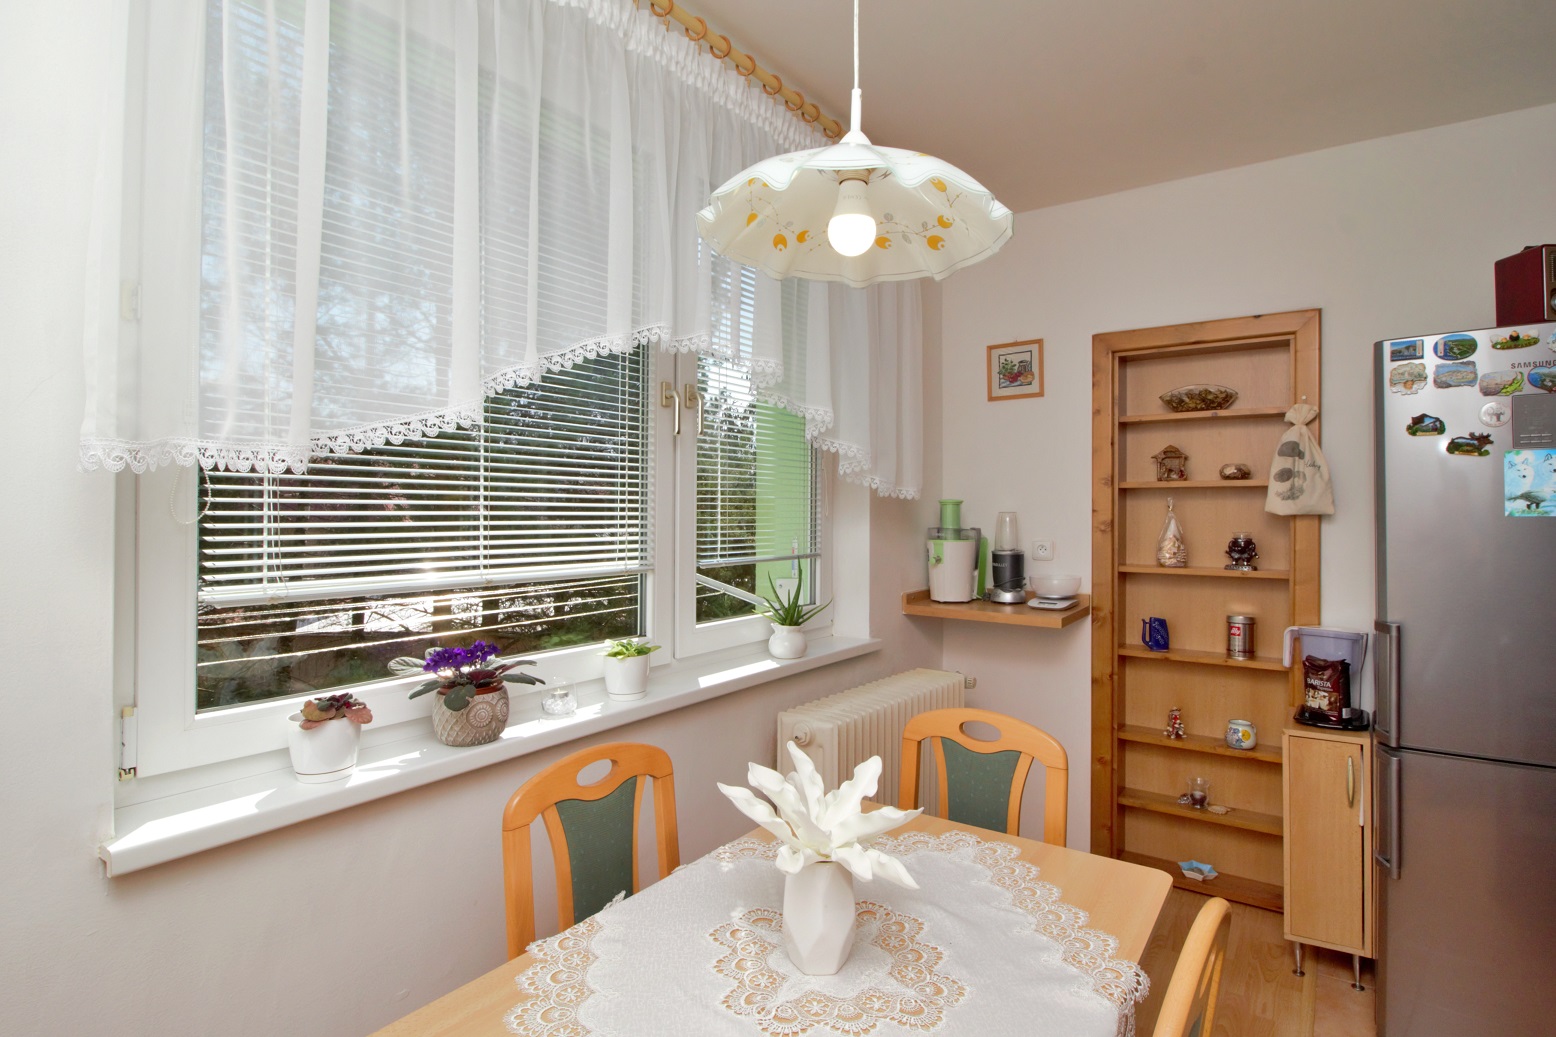 PREDANÝ: 3-izbový zrenovovaný byt s lodžiou, Levoča, sídlisko Pri Prameni, blok Korund, v cene aj nábytok